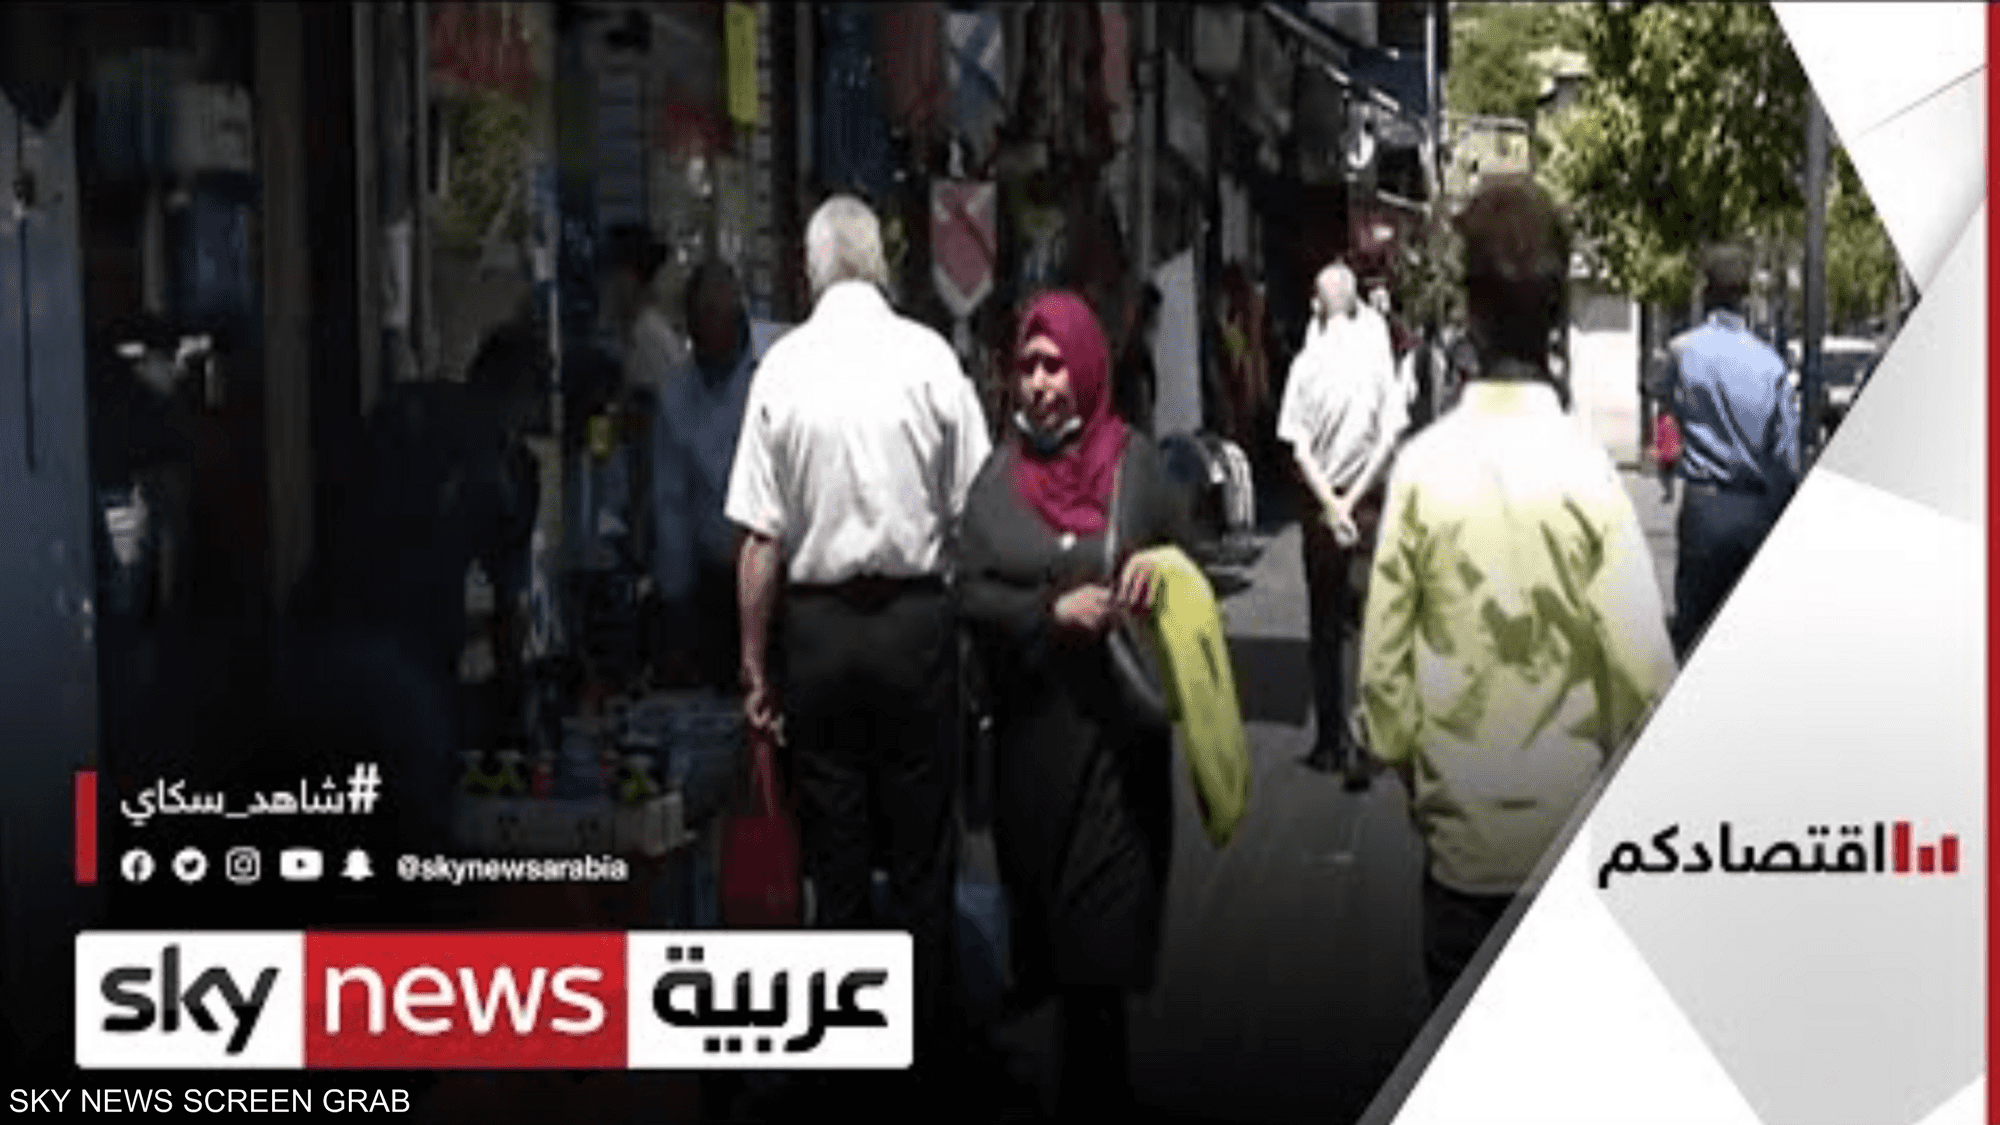 سوق العمل الأردني تأثر من تداعيات وباء كورونا